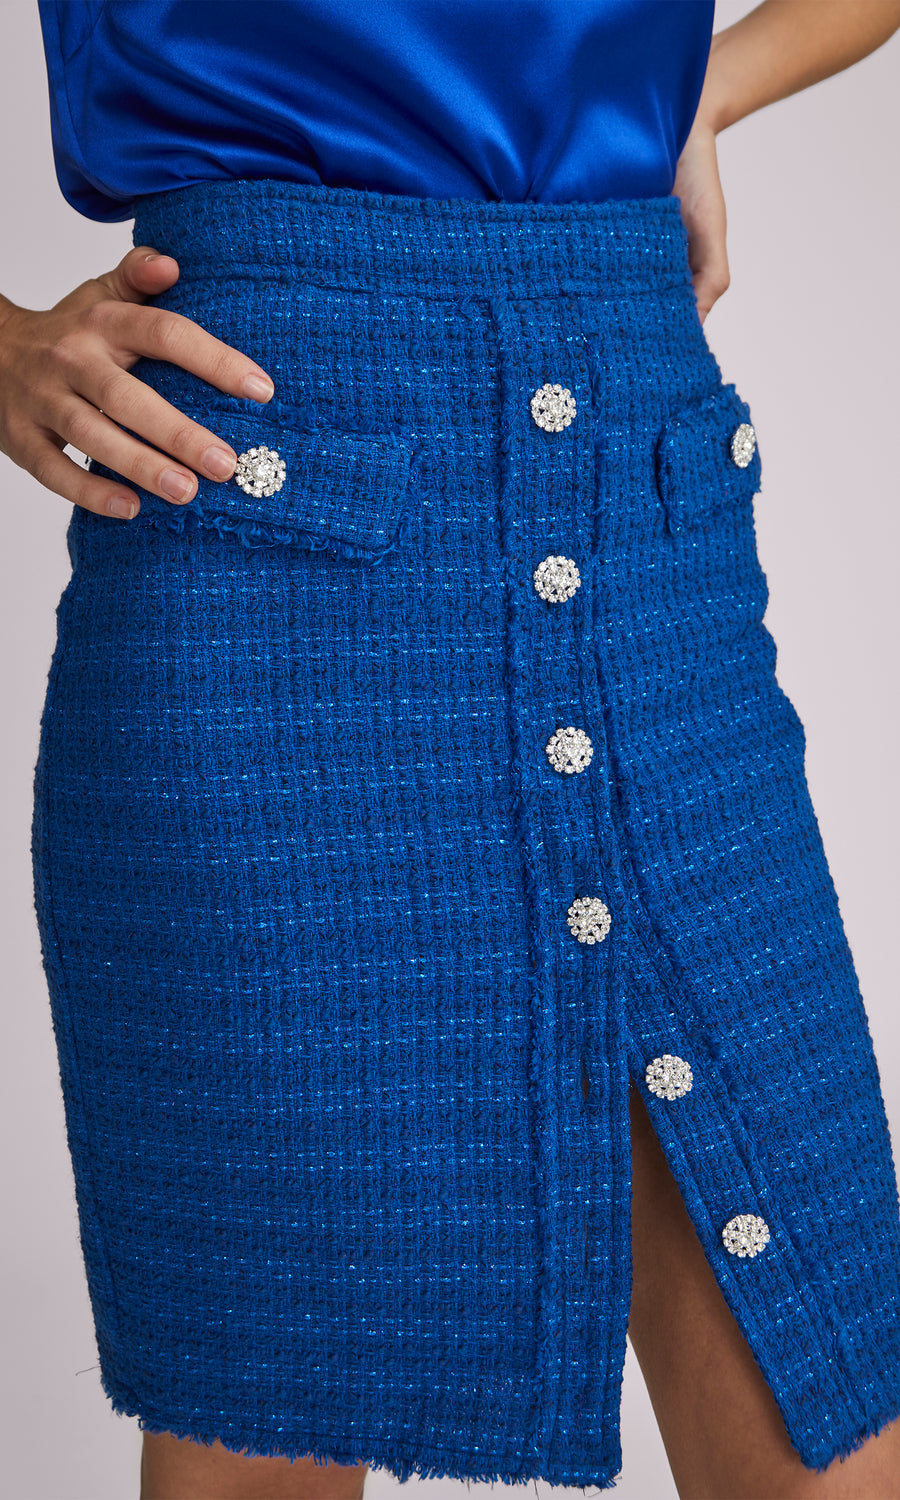 Sarah Tweed Skirt - Cobalt